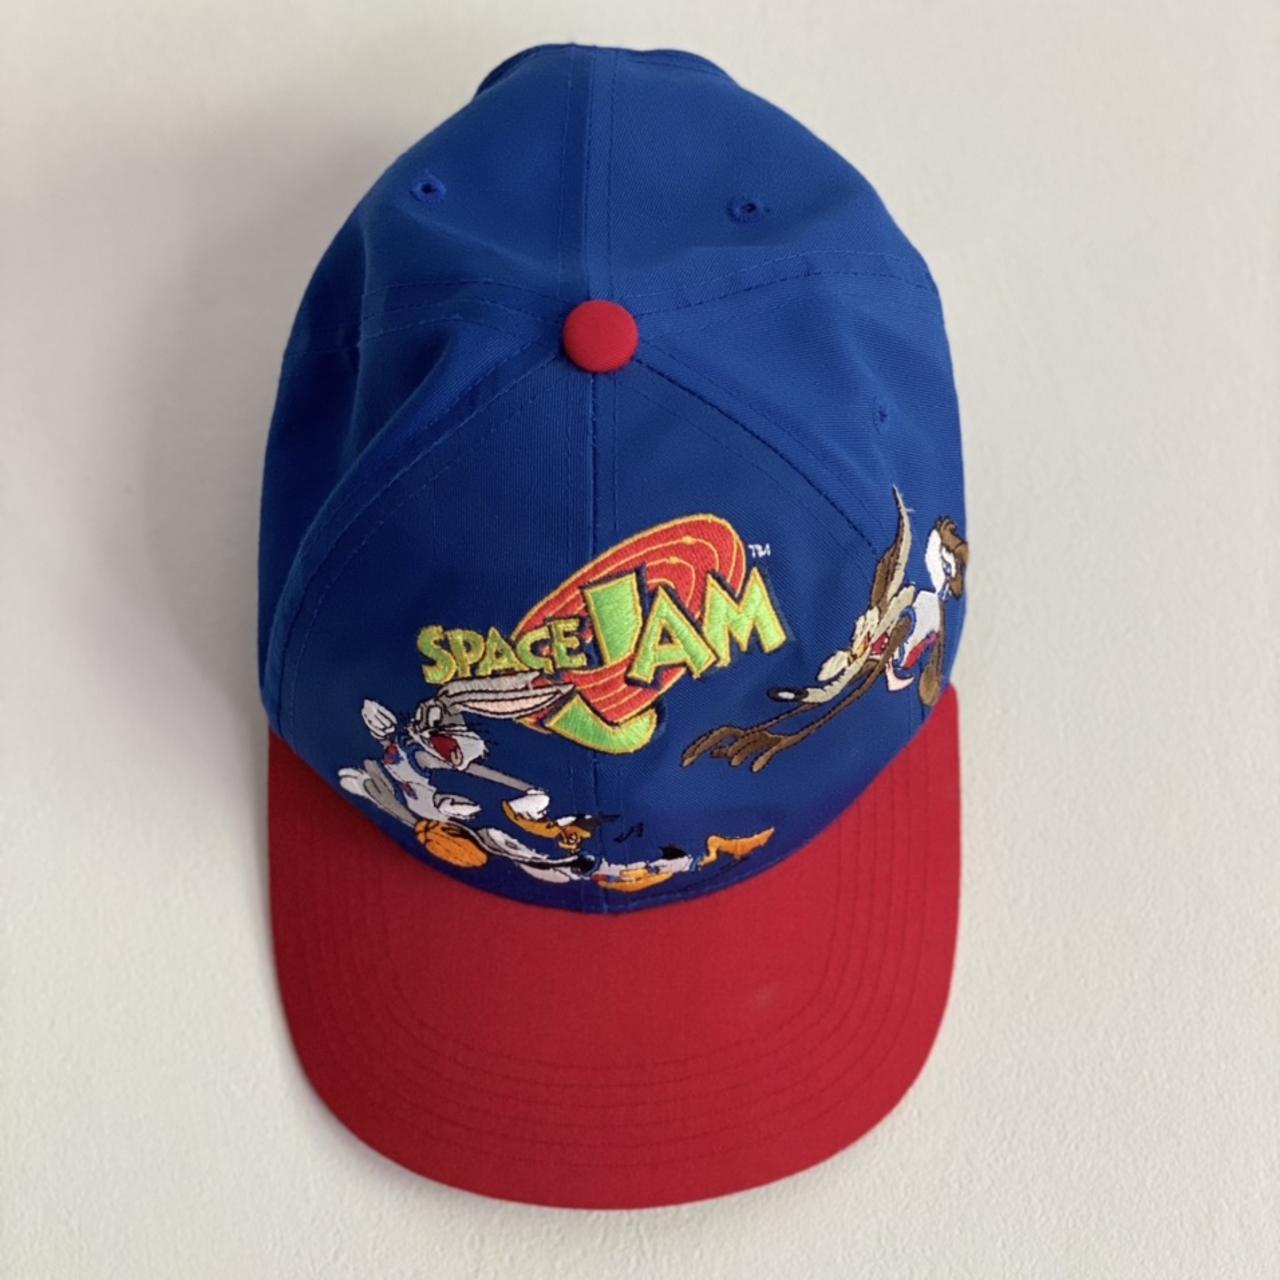 Crazy 90’s Warner Bro’s Space Jam SnapBack hat,... - Depop